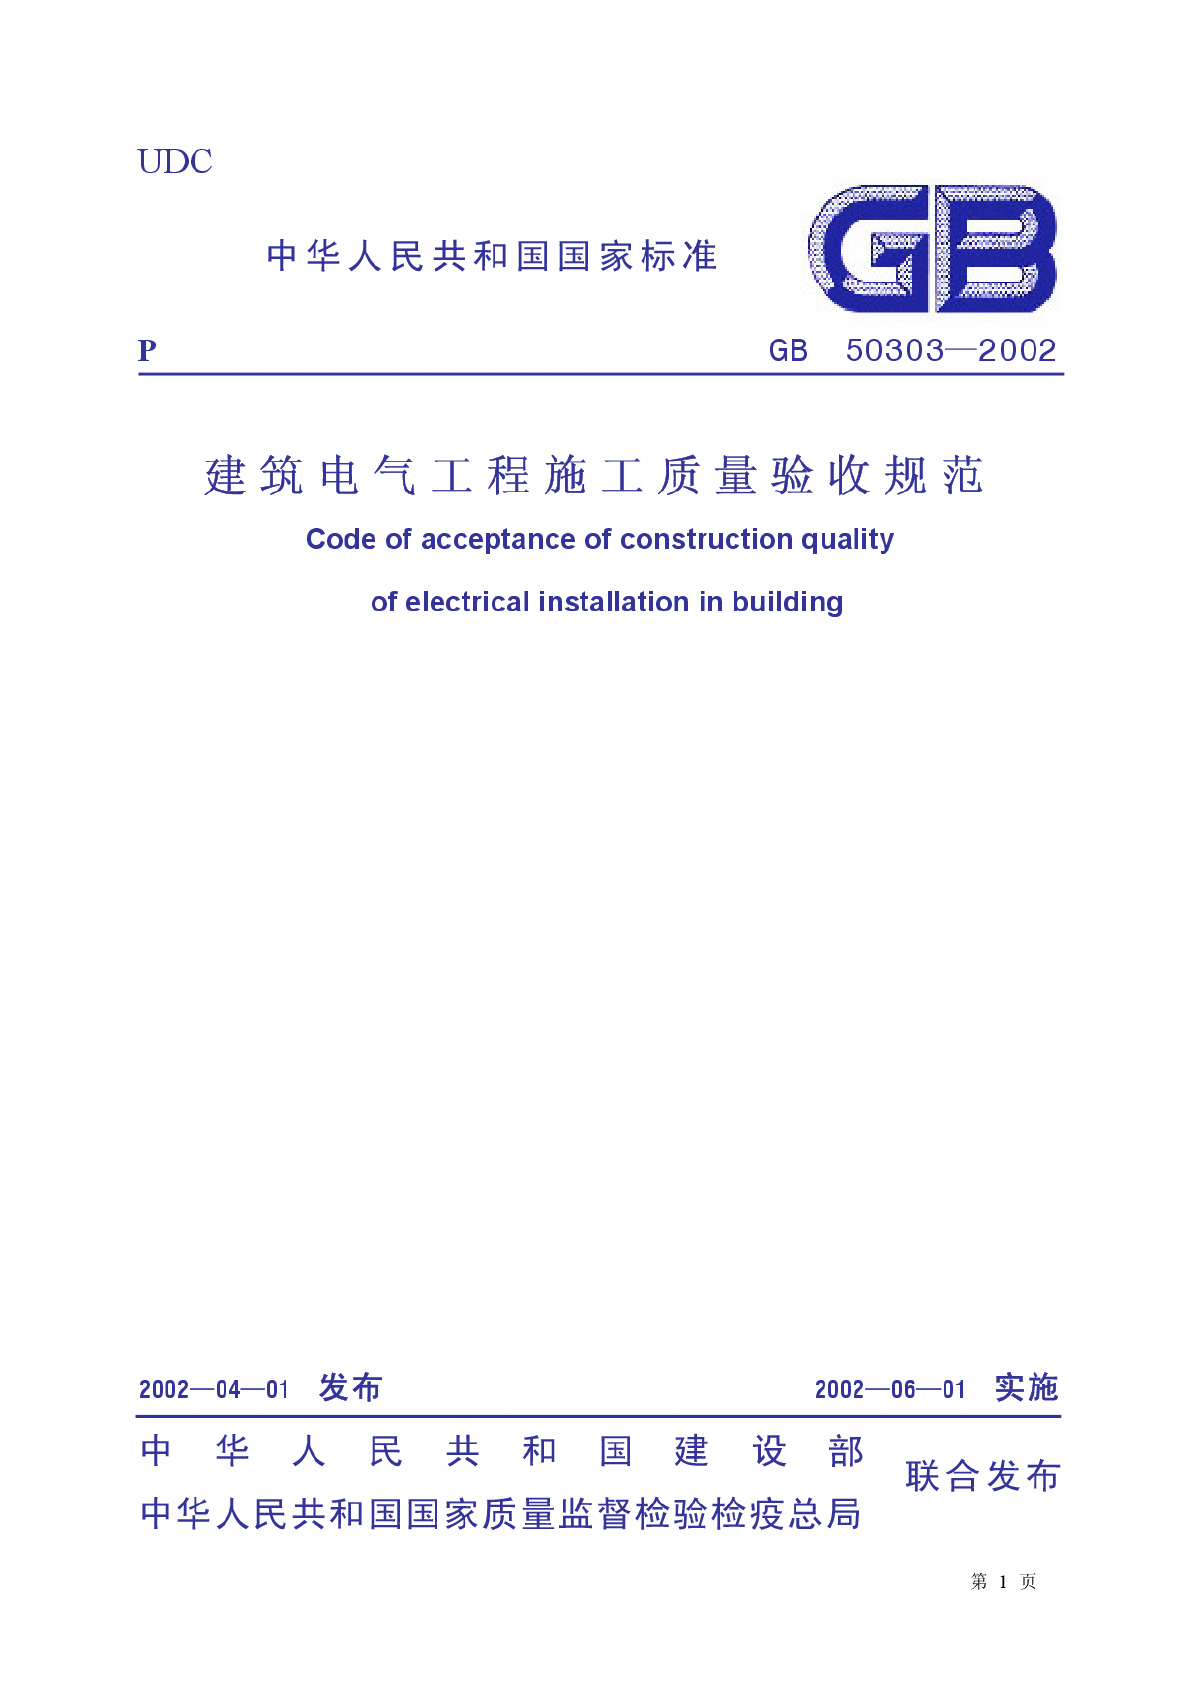 GB 50303-2002《建筑电气工程施工质量验收规范》含说明